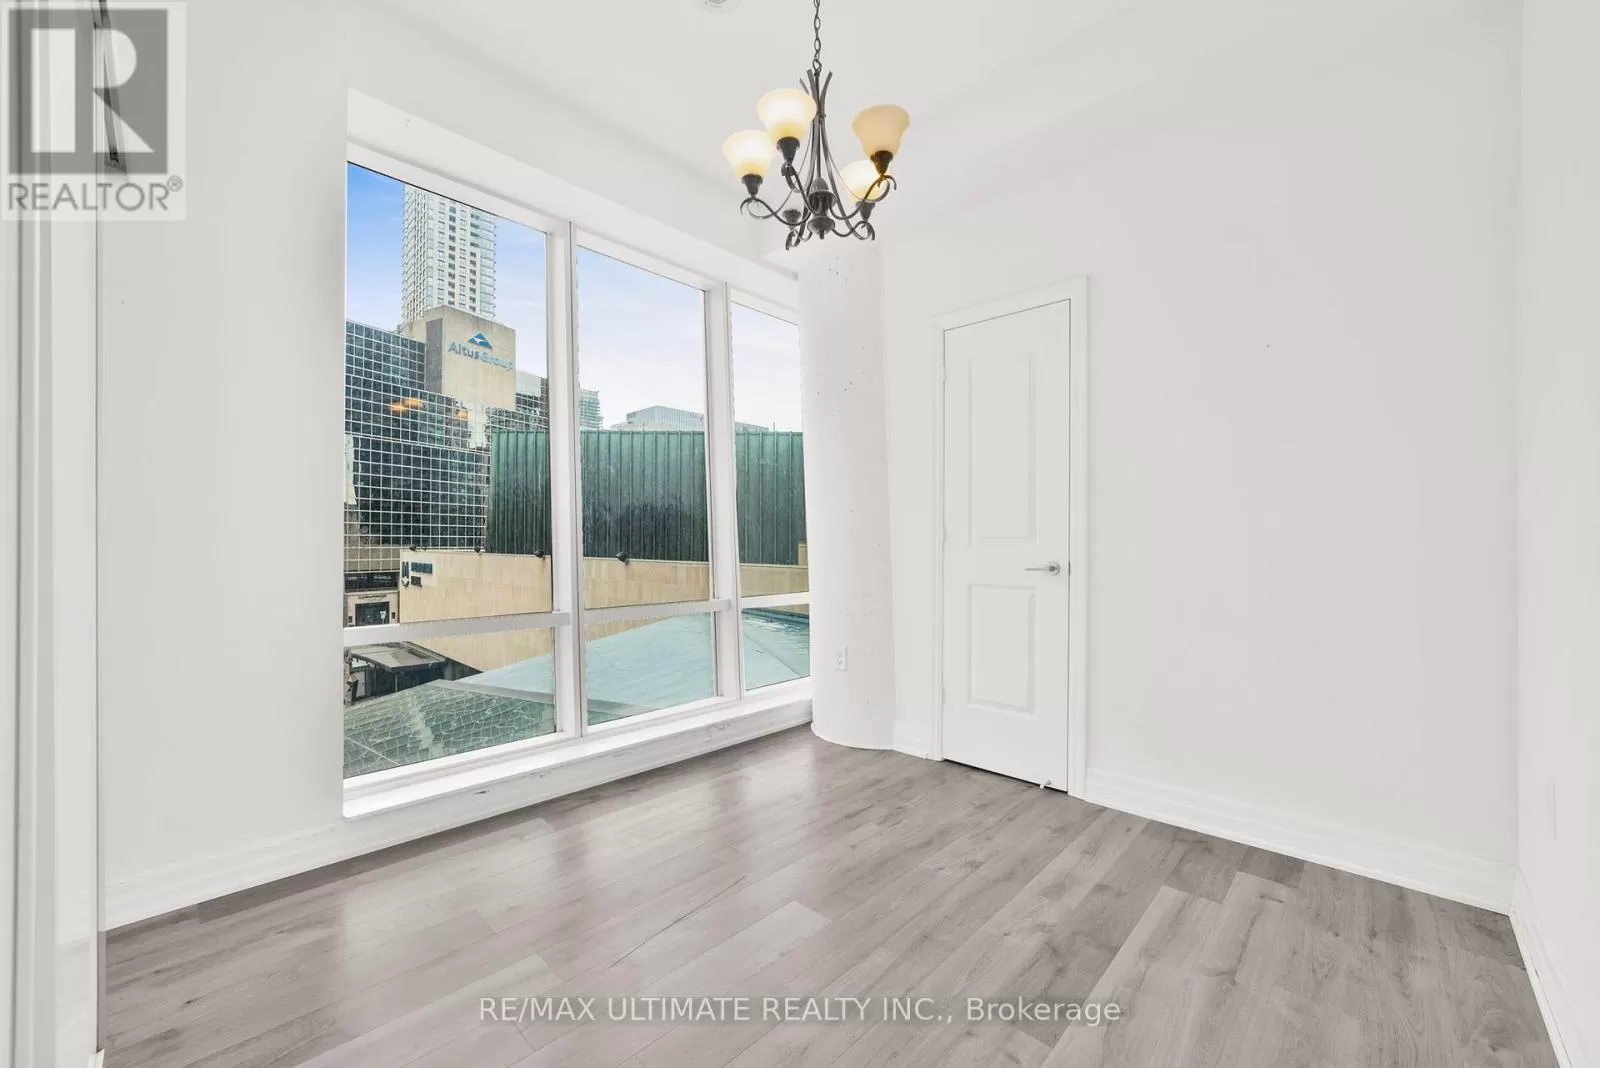 Apartment for rent: 506 - 8 The Esplanade Street, Toronto, Ontario M5E 0A6